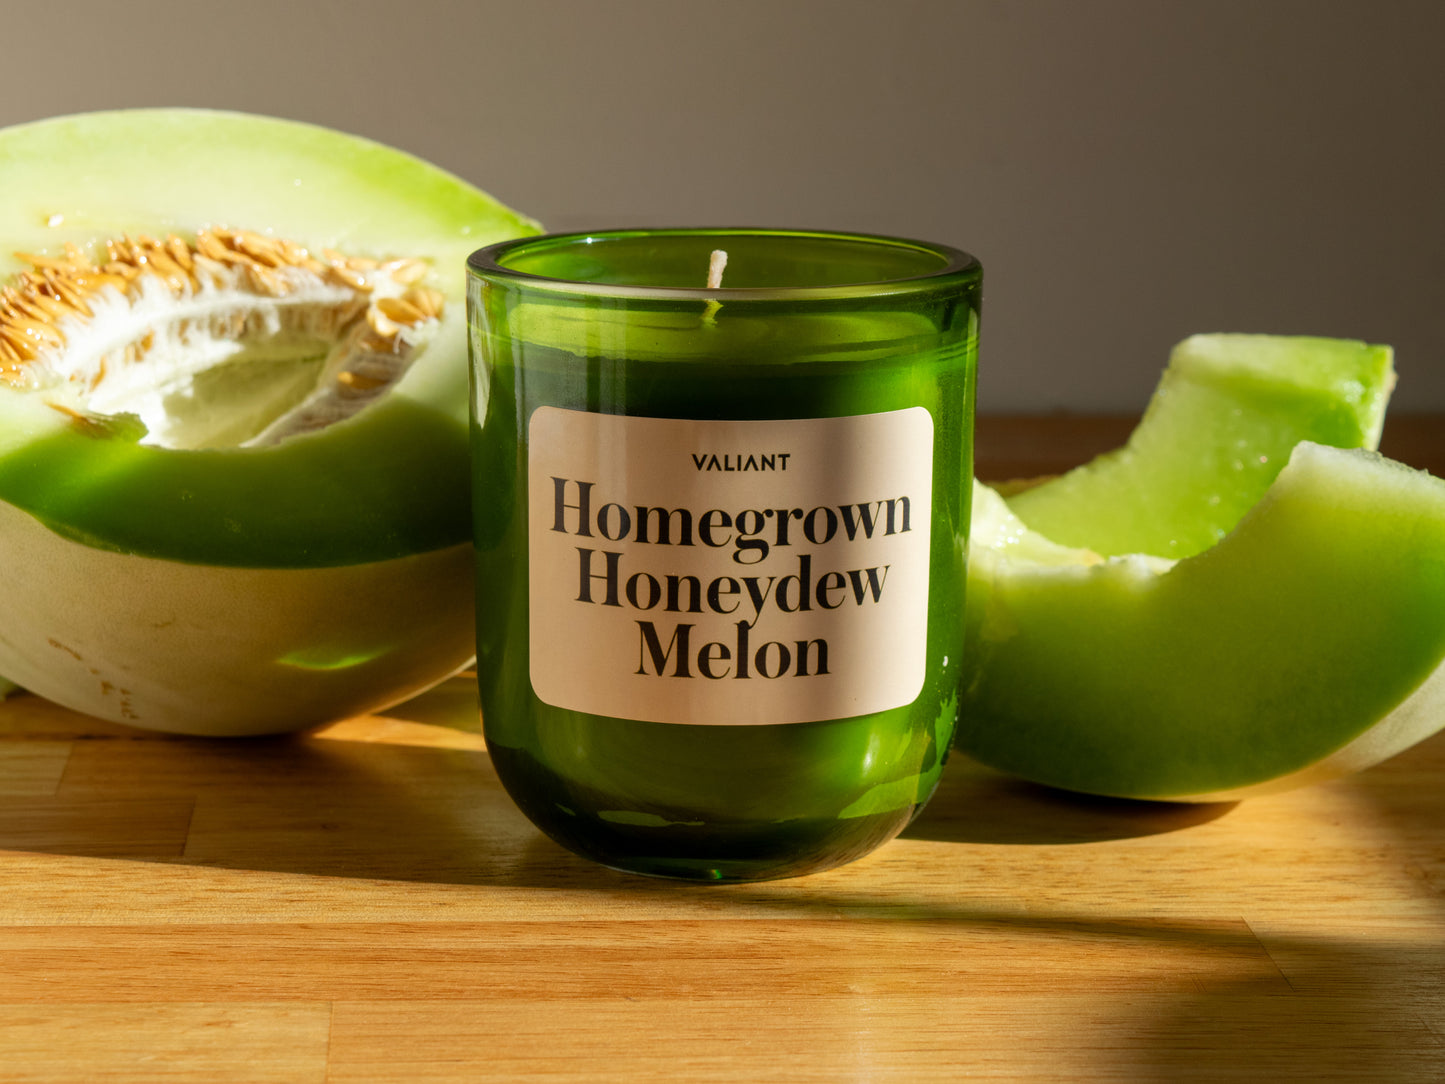 Homegrown Honeydew Melon Candle